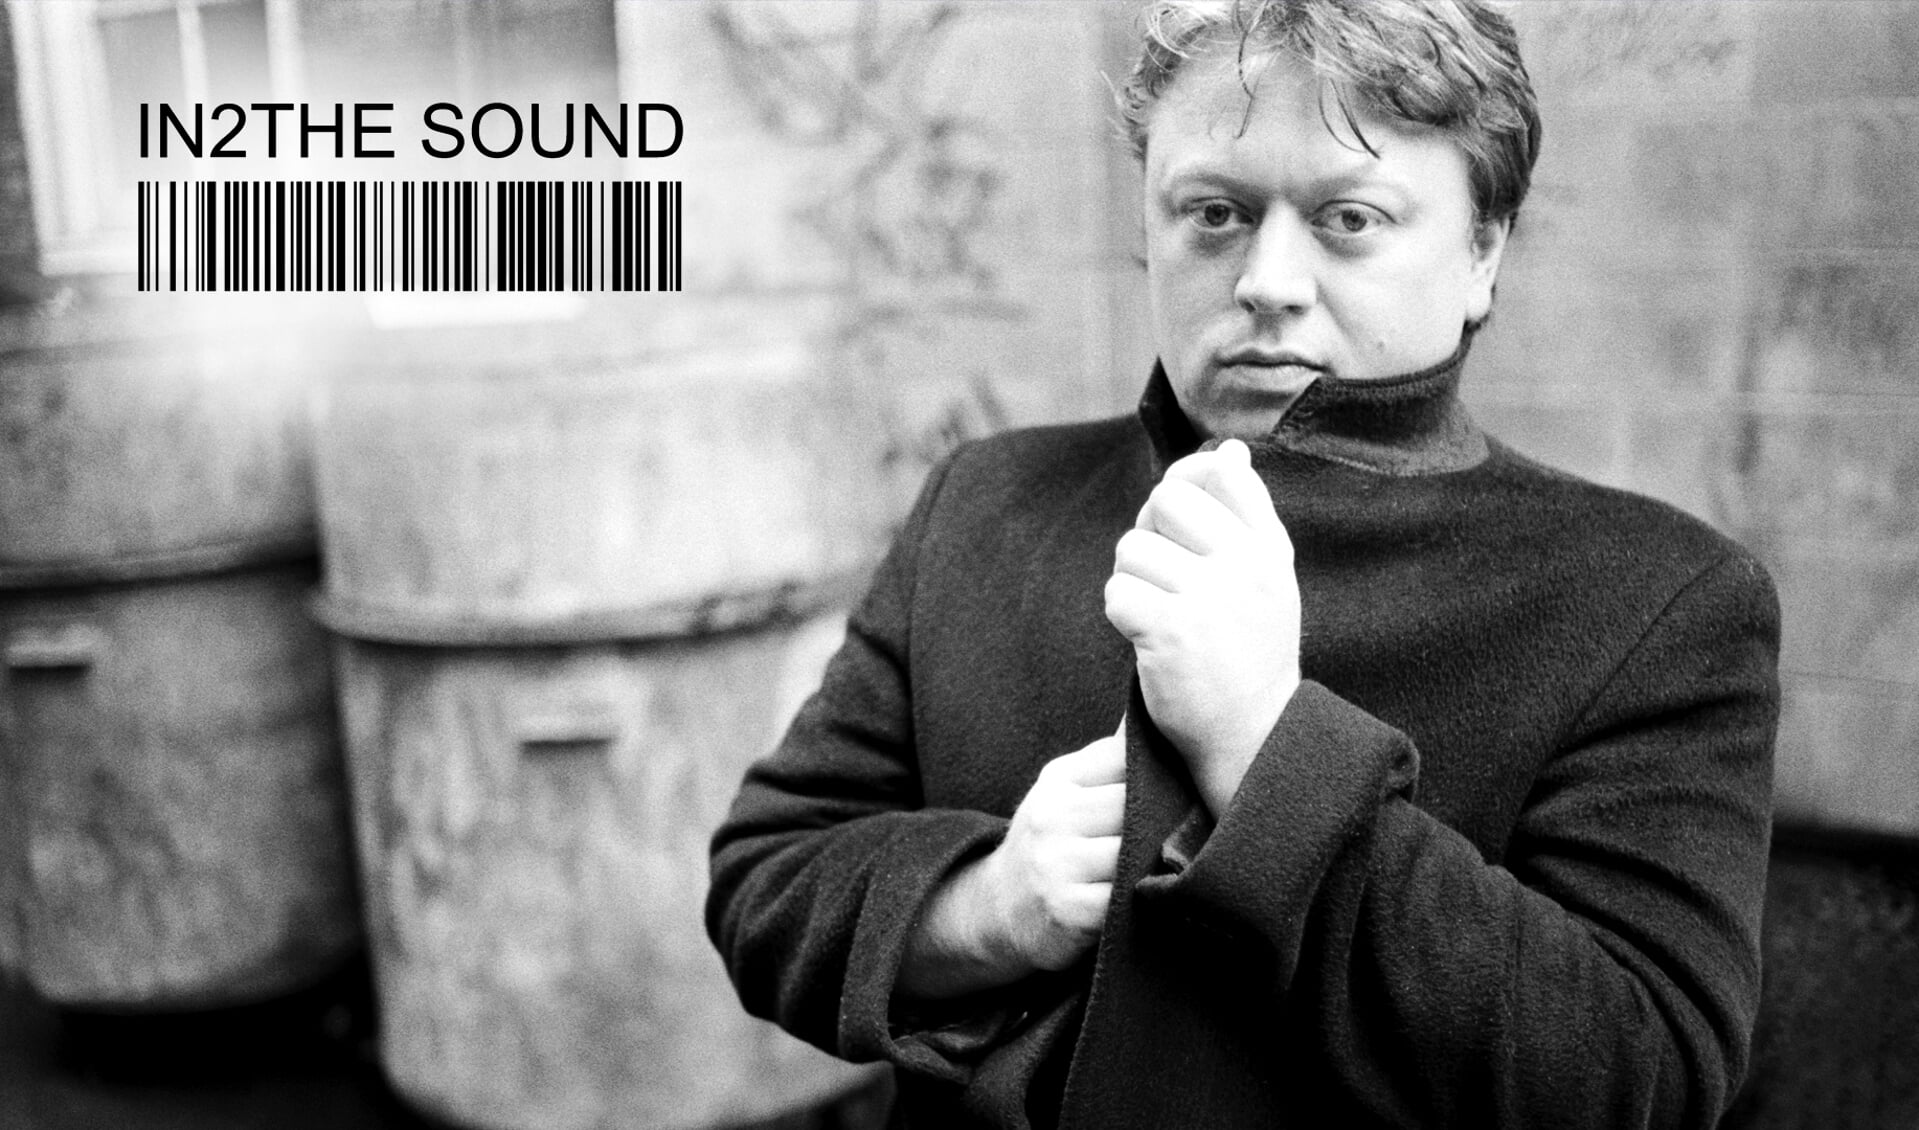 Adrian Borland & The Sound, a Retrospective